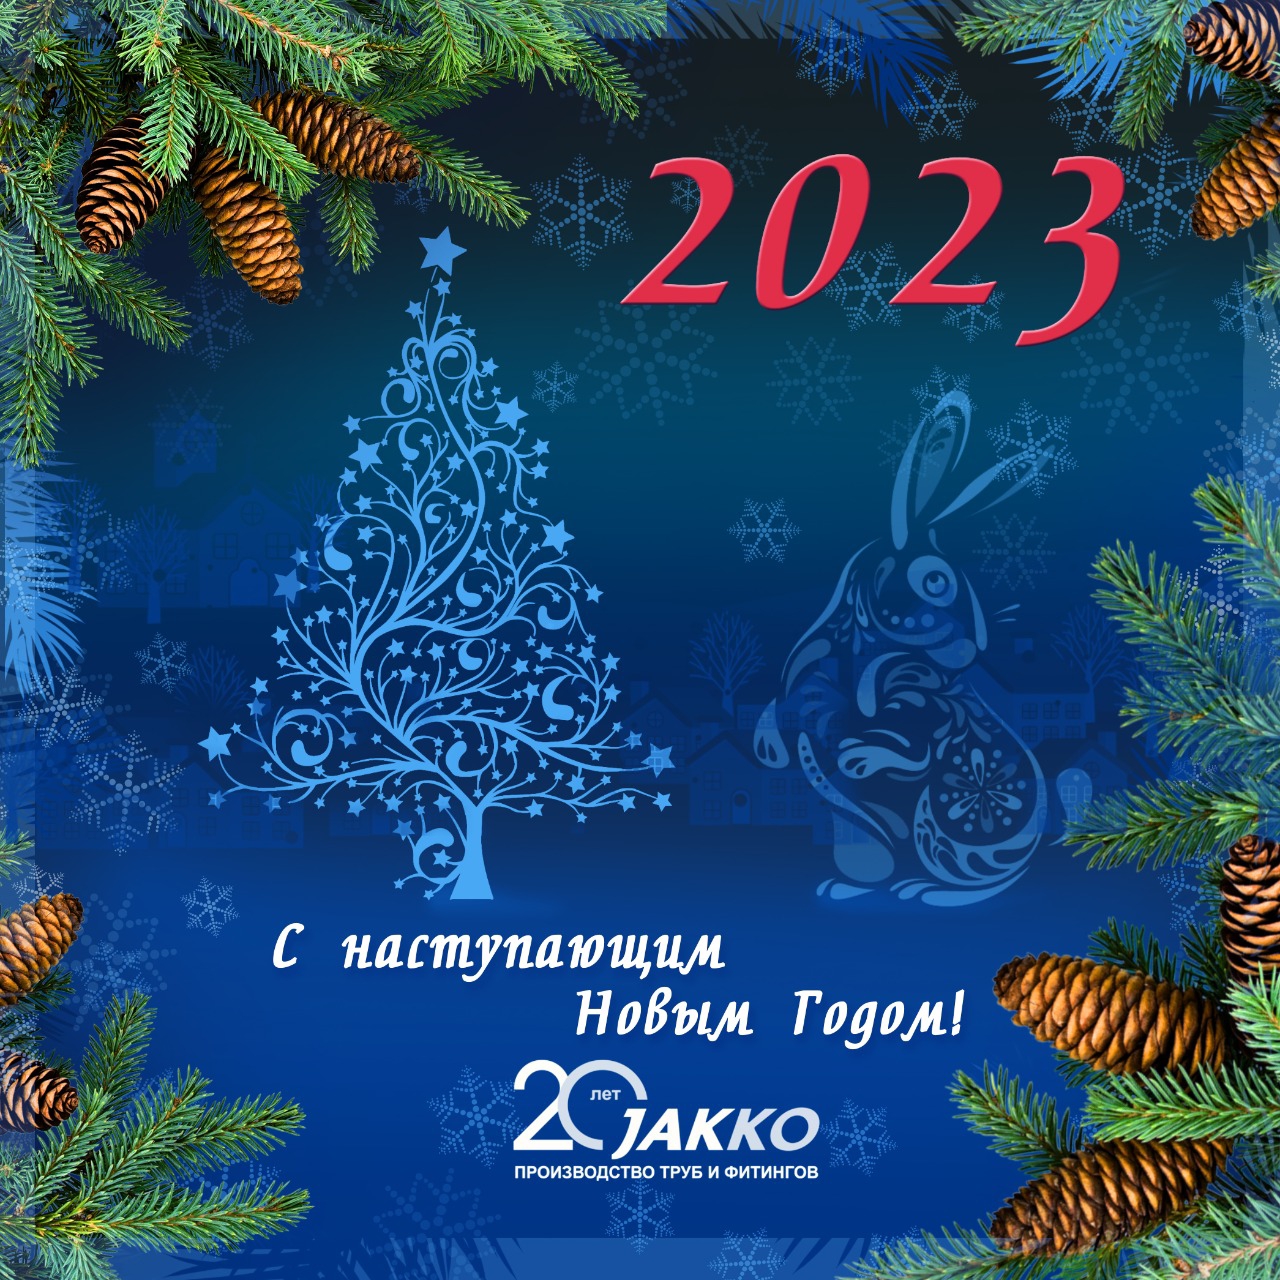 Компания JAKKO поздравляет всех с наступающим Новым 2023 Годом!